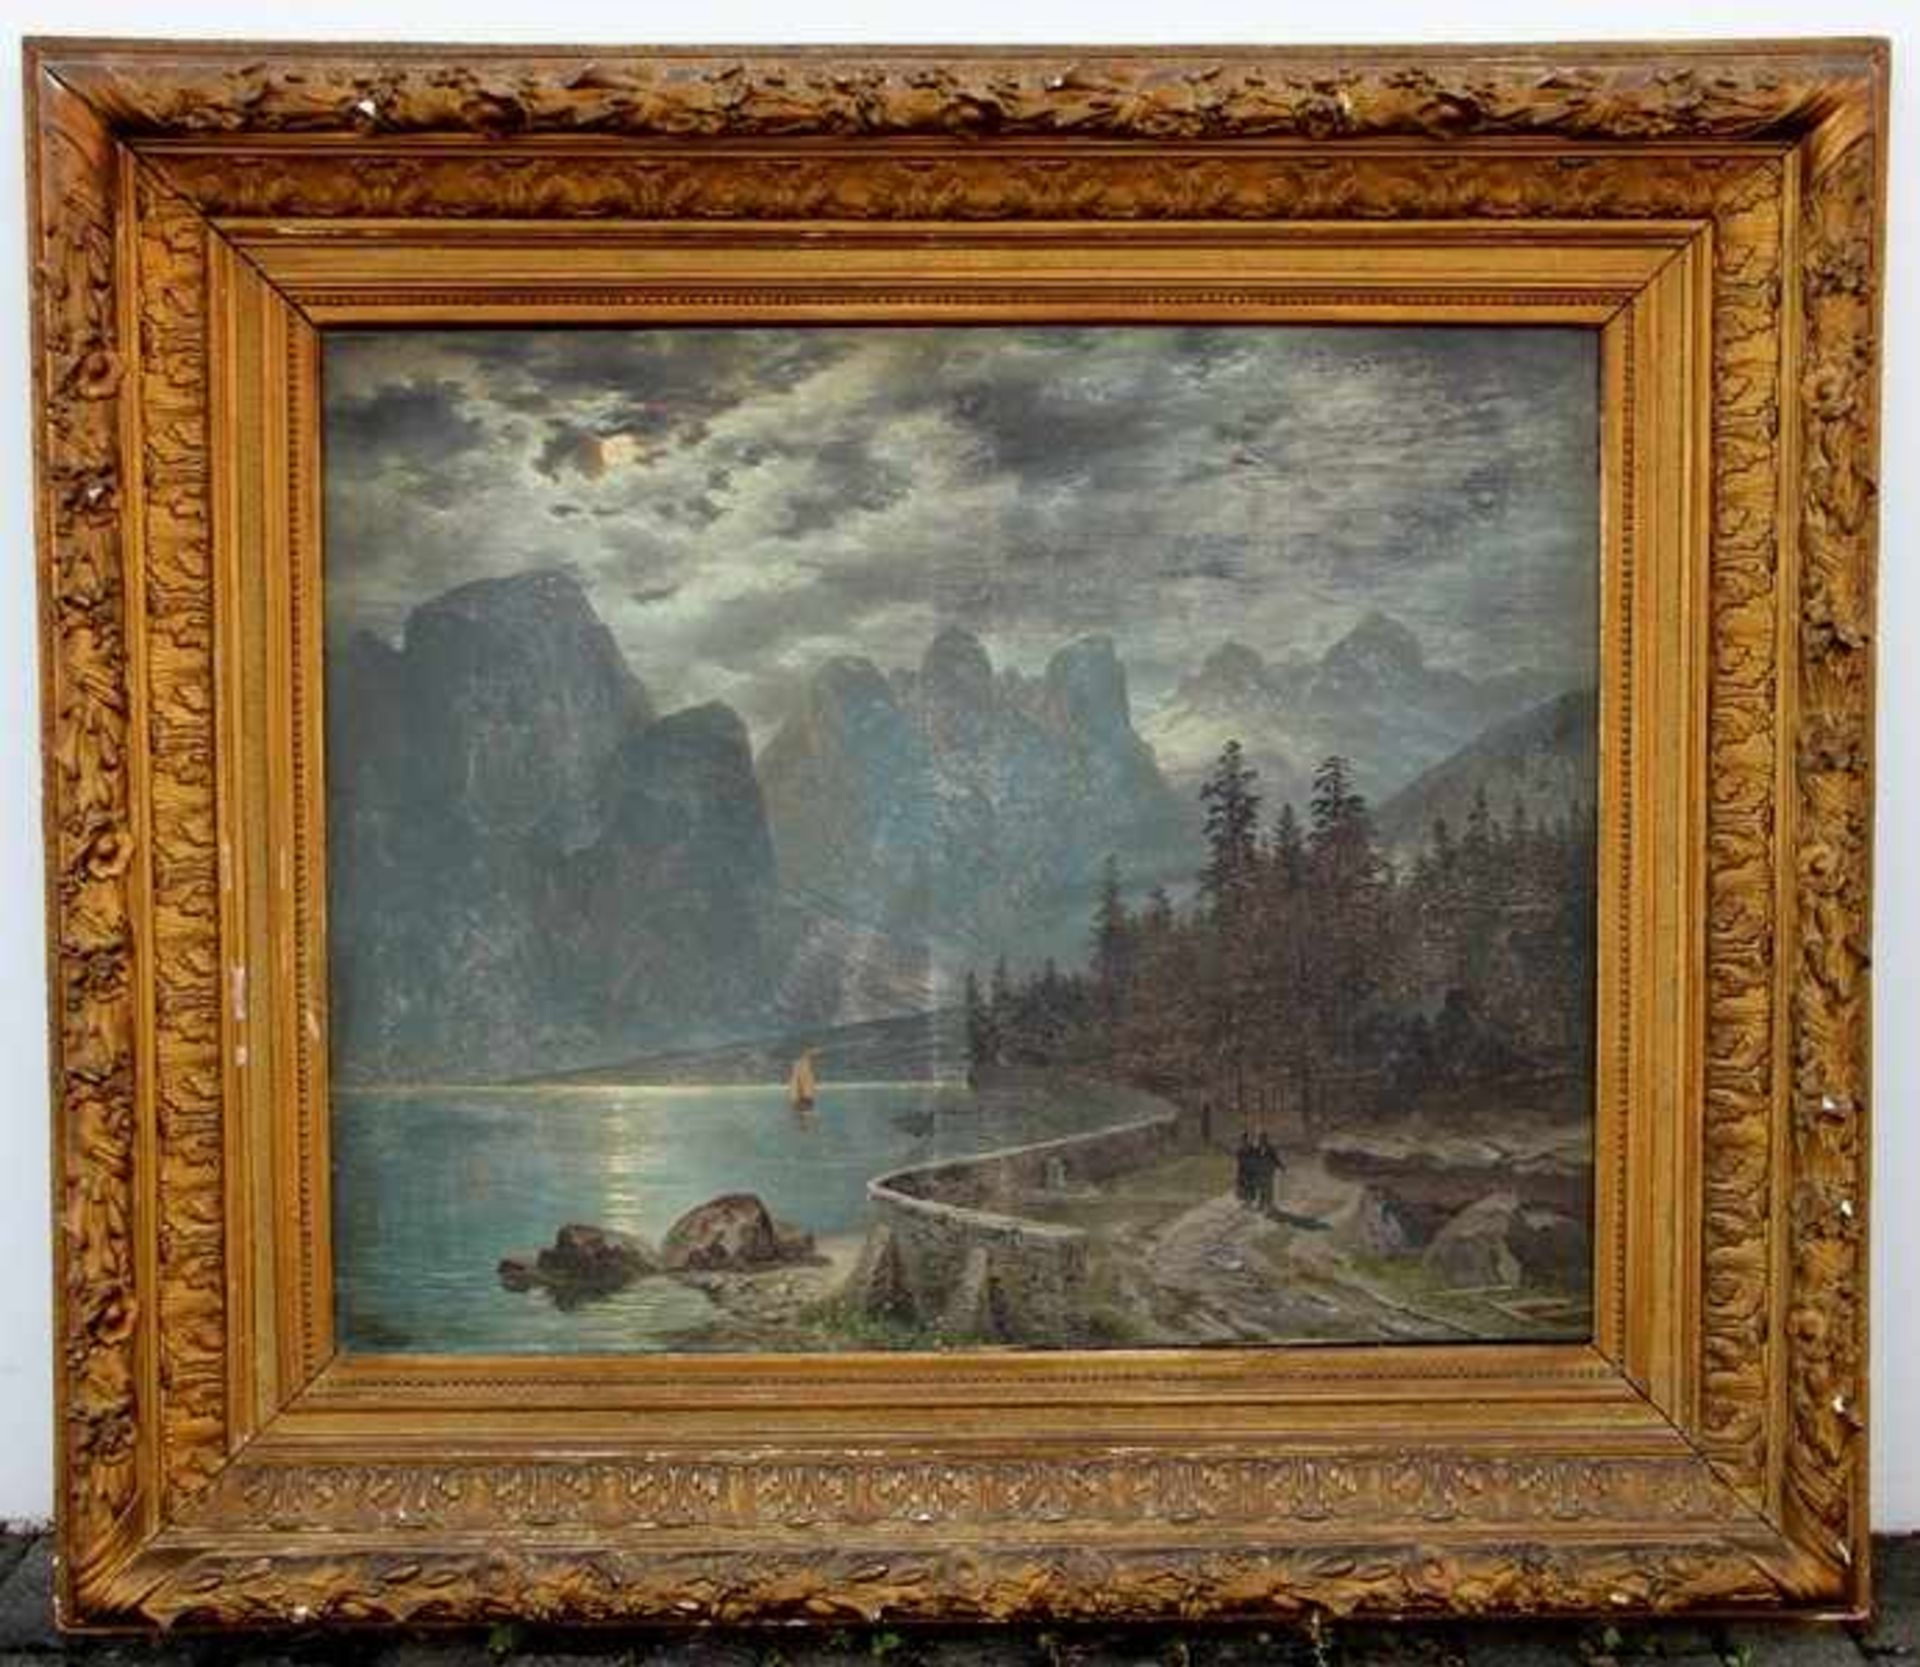 Nocken, Wilhelm Theodor1830-1905, Alpenlandschaft mit einem See, romantische Vollmondathmosphäre,